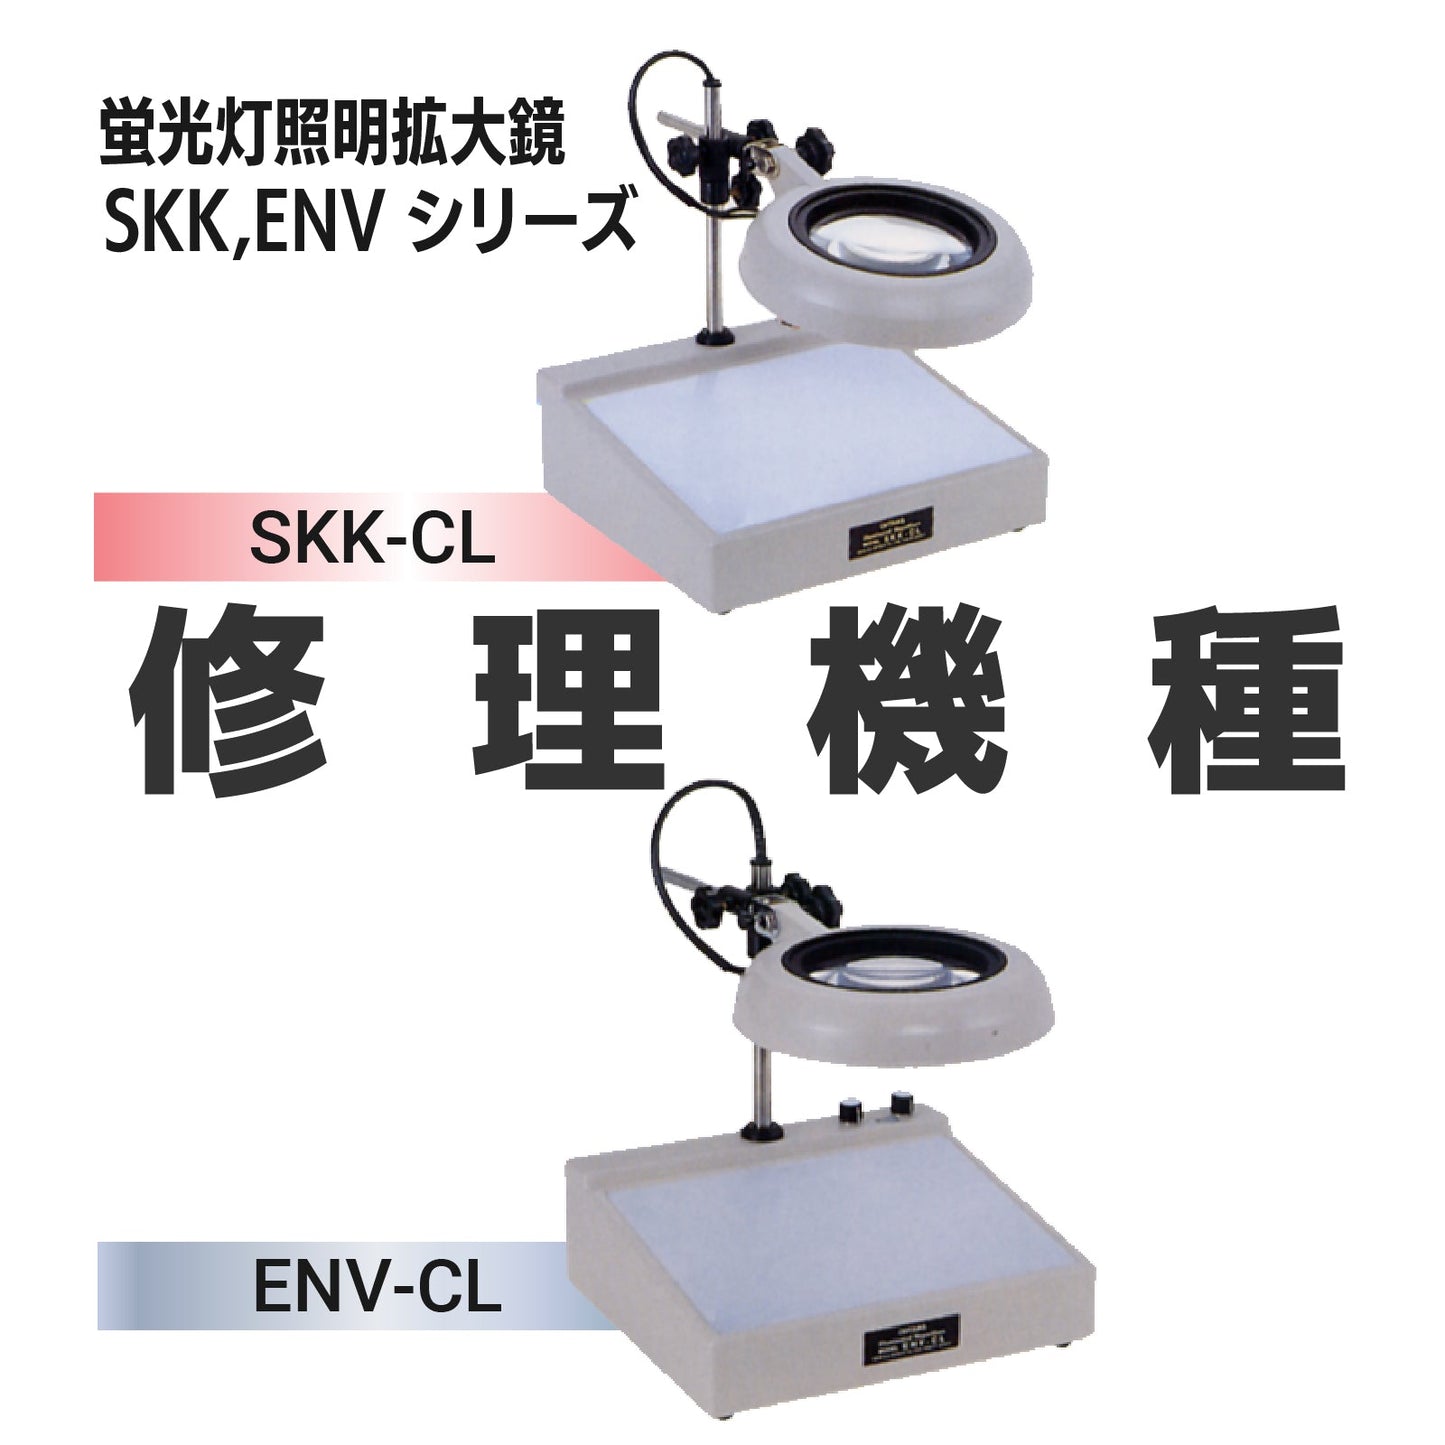 Serie SKK/serie ENV: SKK-CL,ENV-CL